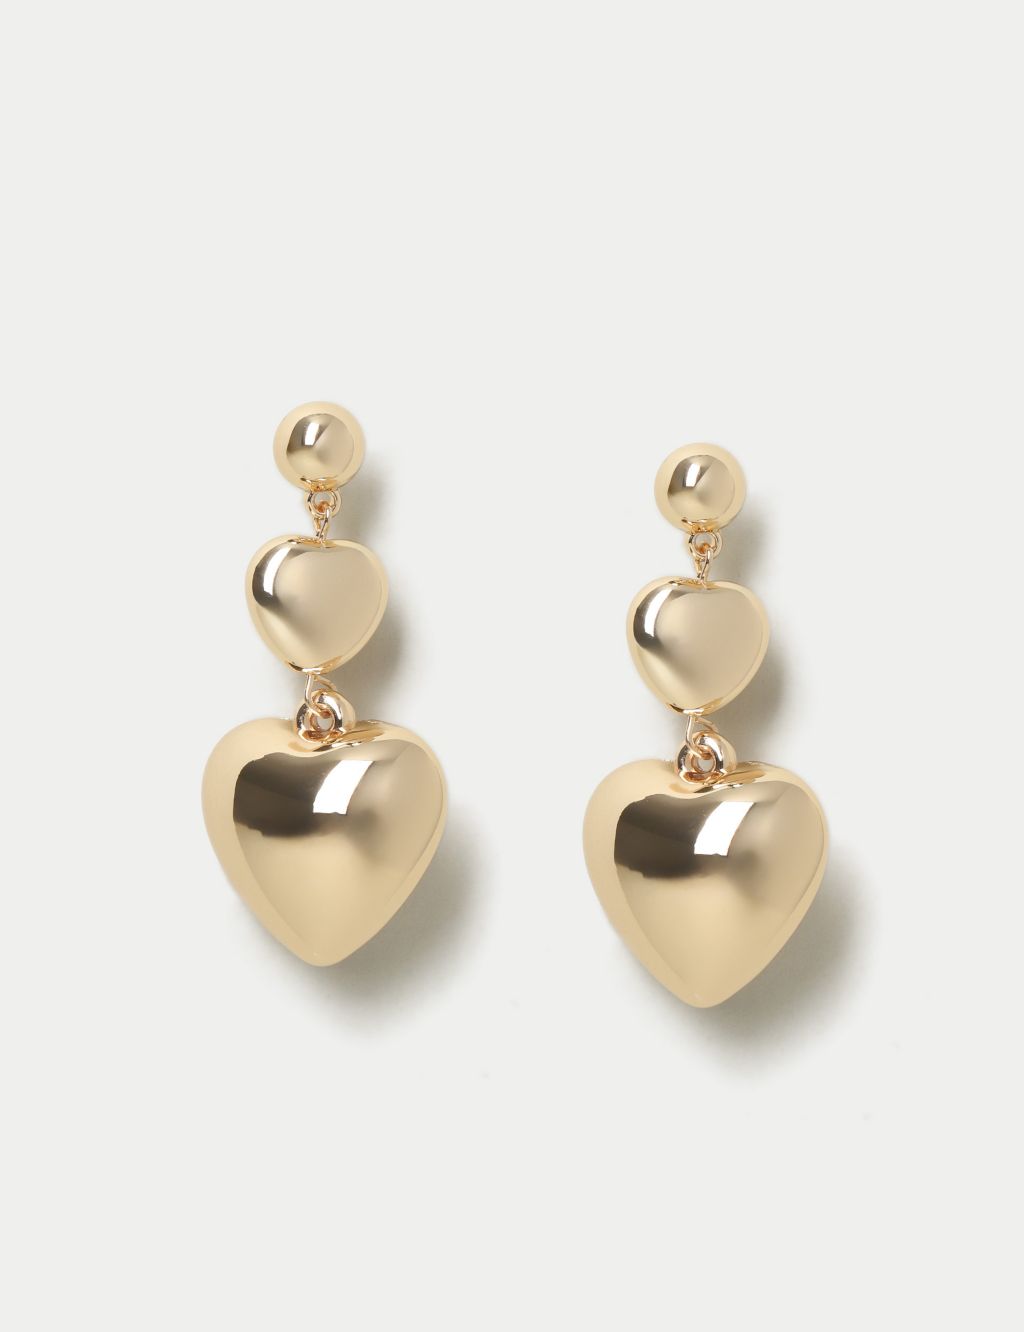 Gold Tone Heart Drop Earrings